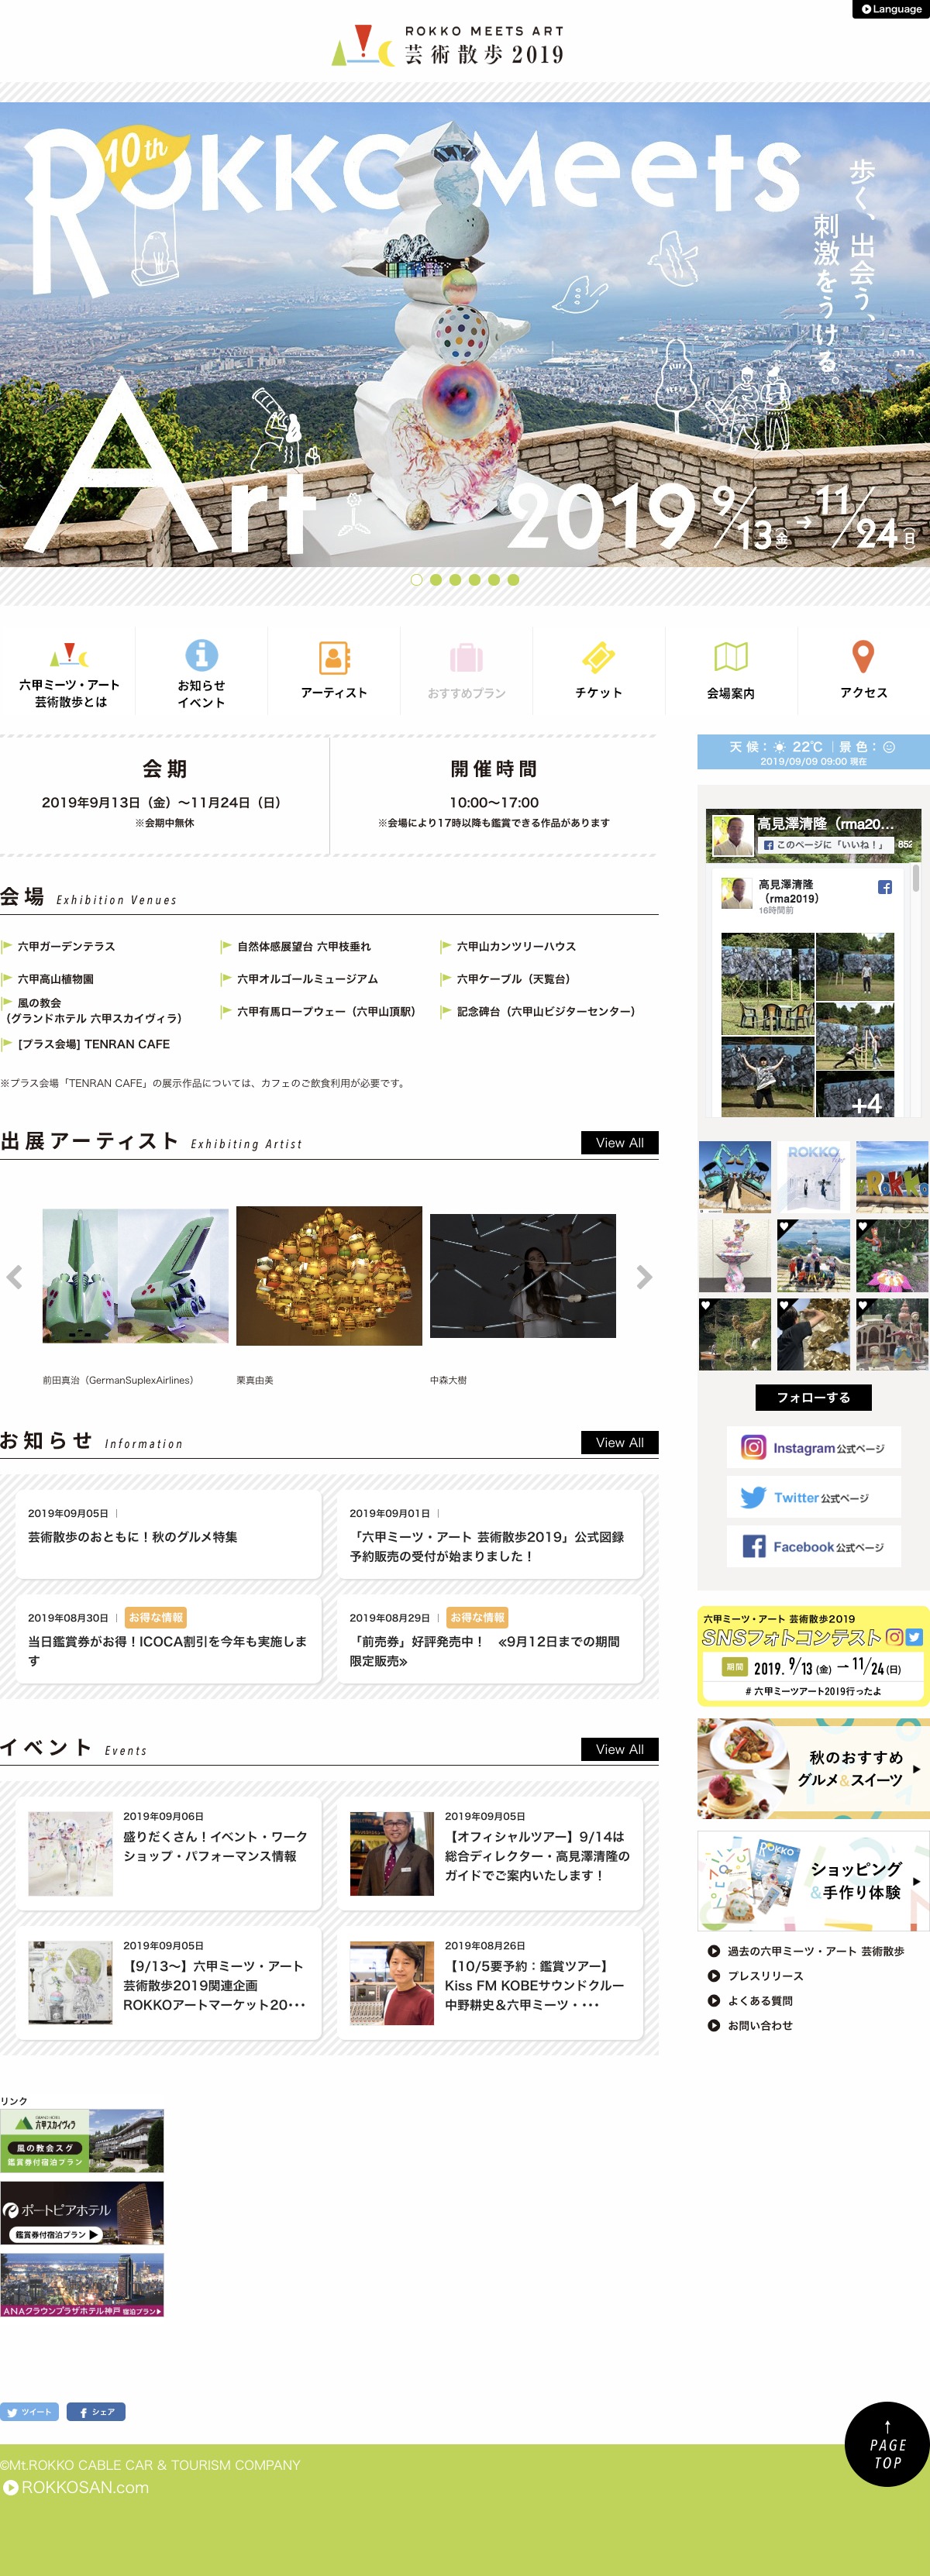 アート・文化・音楽 ホームページ制作 WEBデザイン参考ギャラリー 六甲ミーツ・アート